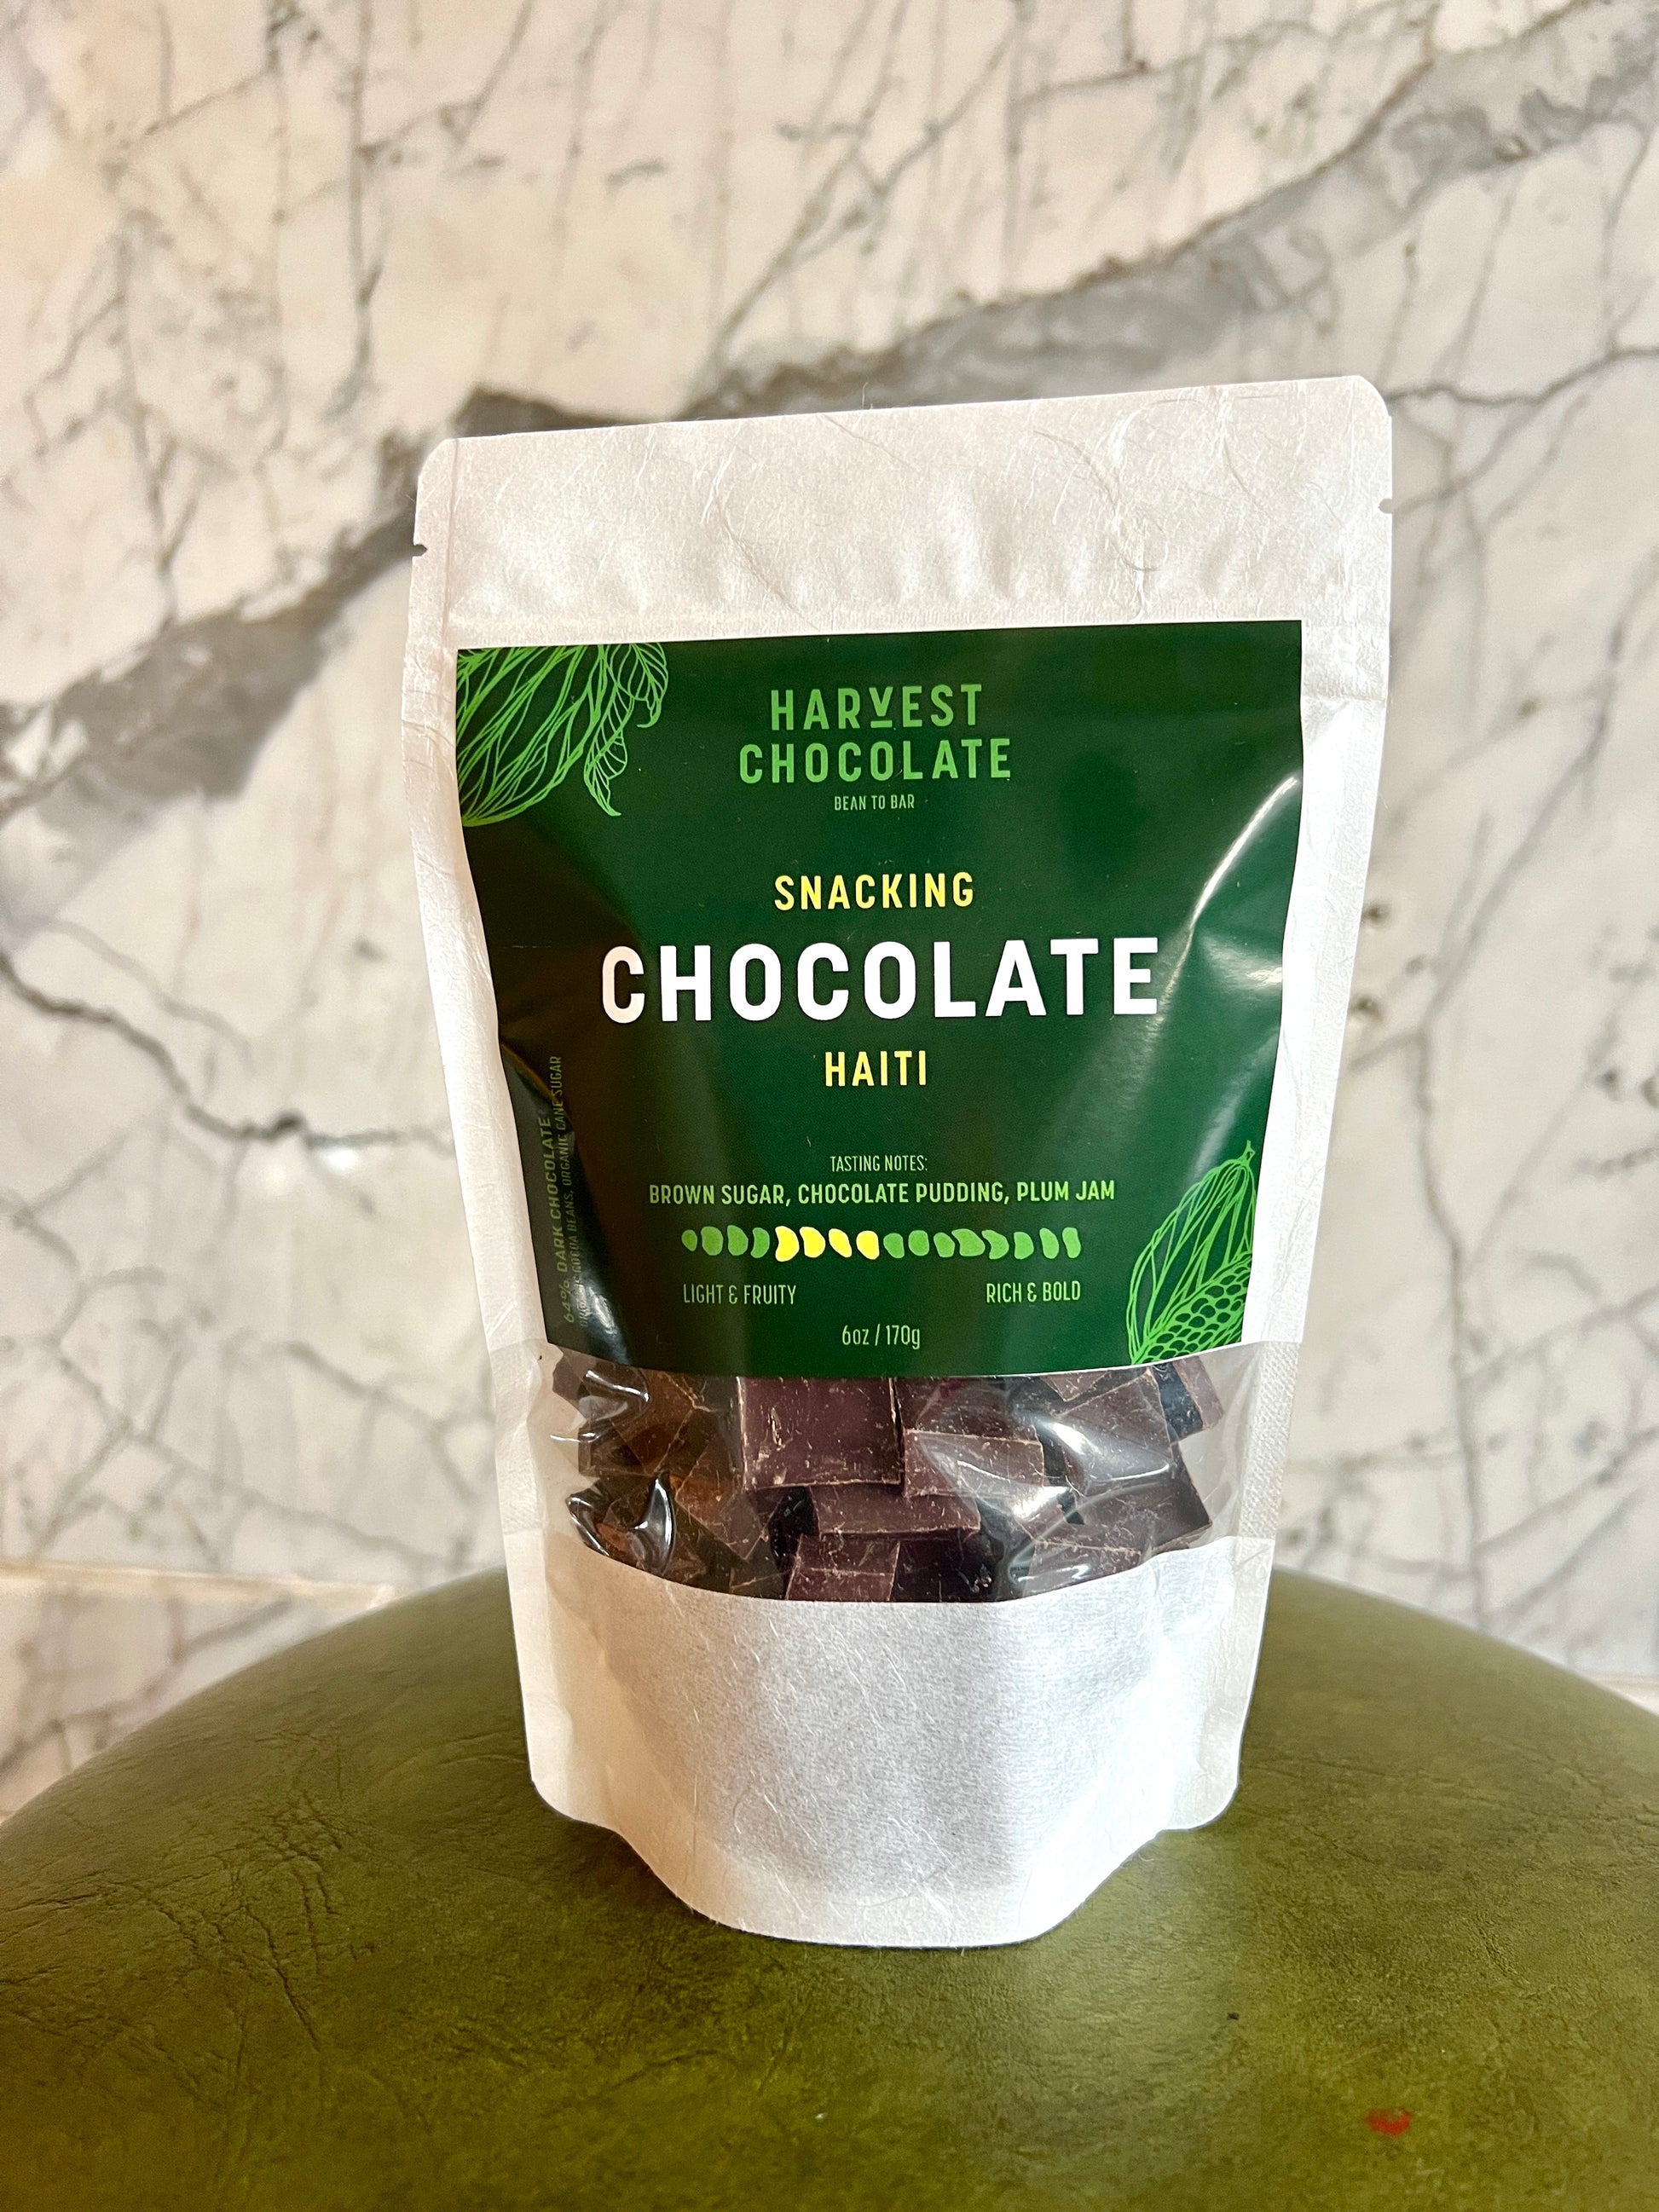 Haiti Snacking Chocolate – Harvest Chocolate